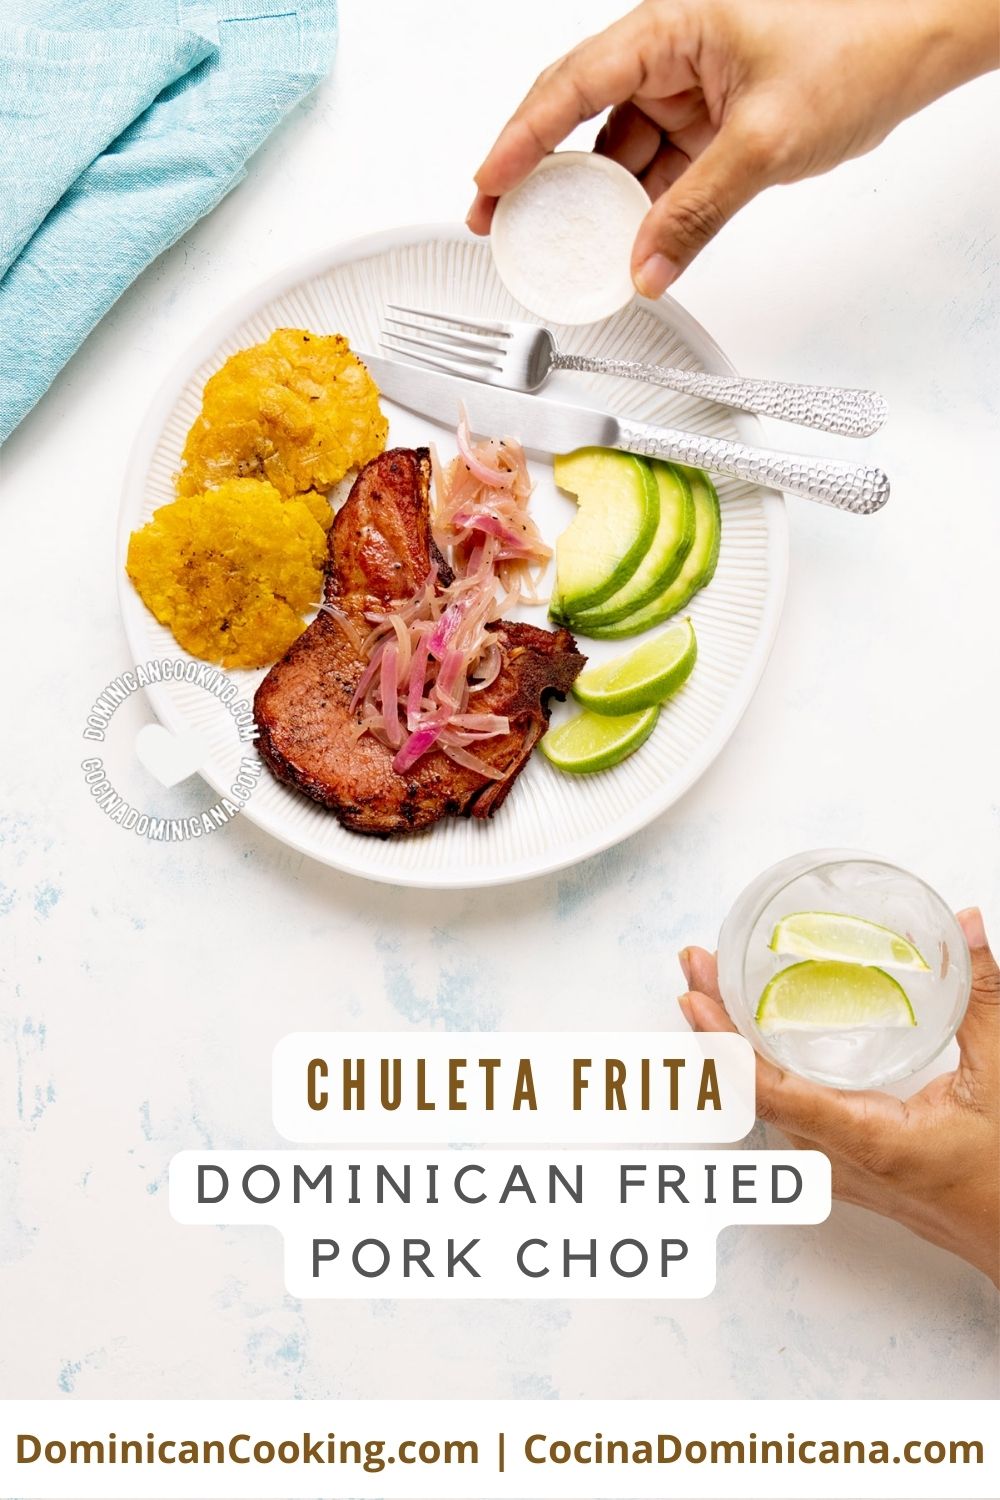 Chuleta frita (dominican fried pork chop) recipe.